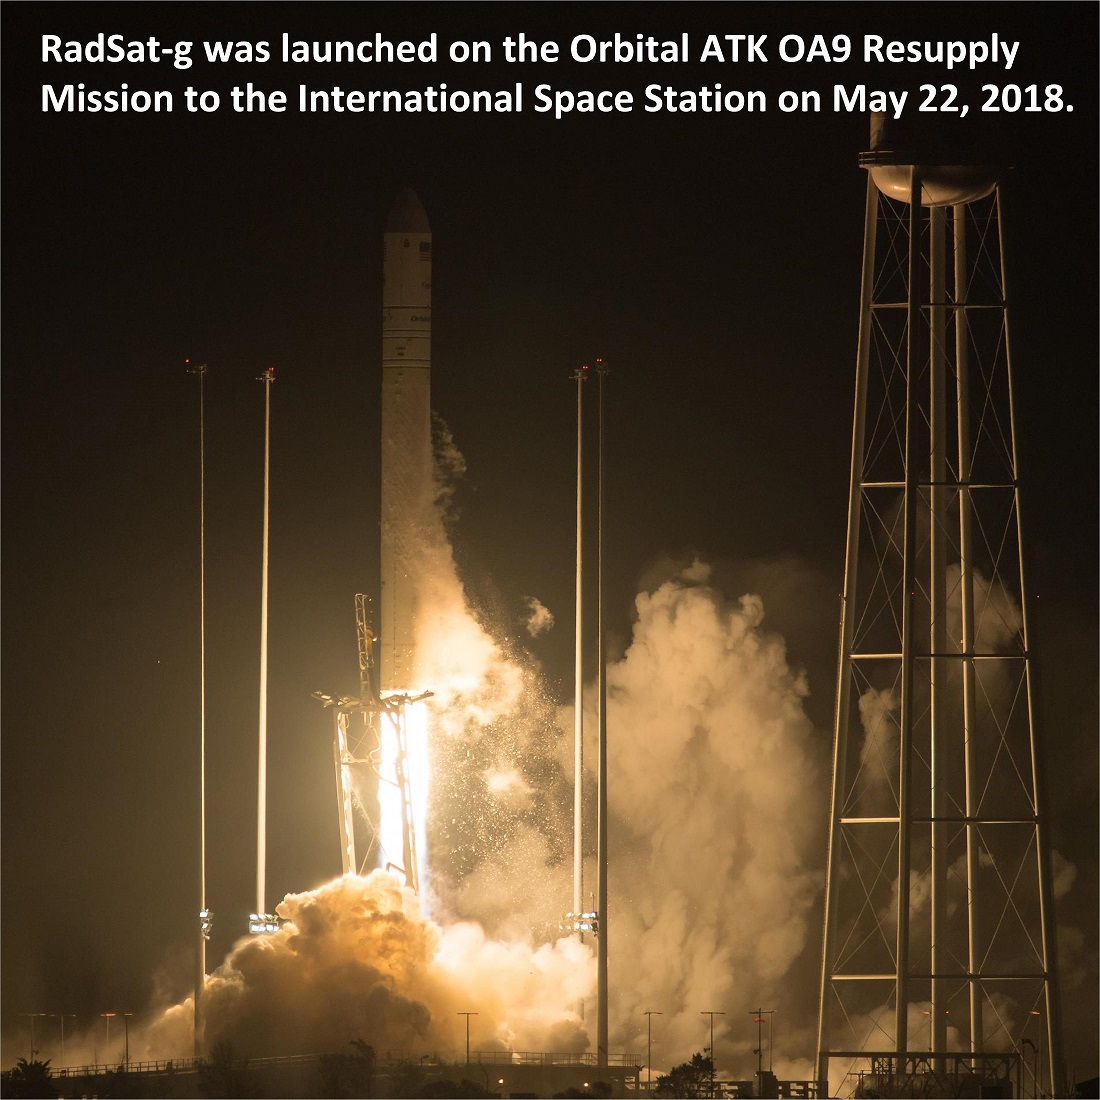 RadSat-g Launch